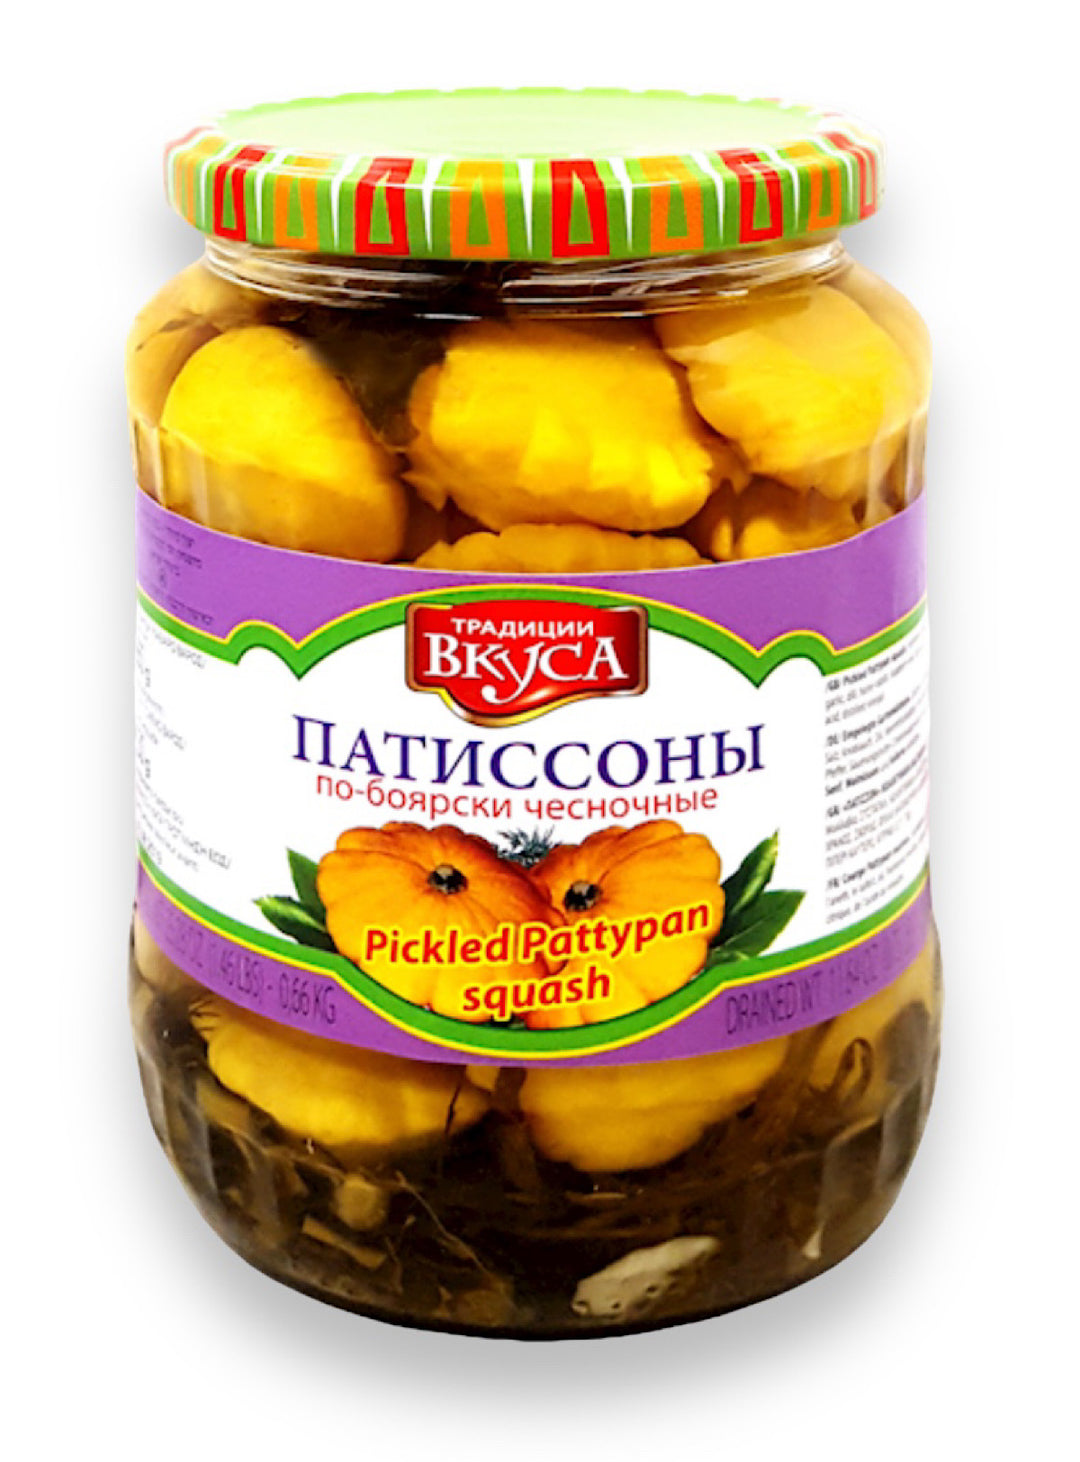 Pickled Pattypan Squash Kosher Bojarskie - Tradicll Vkusa - 0.72l